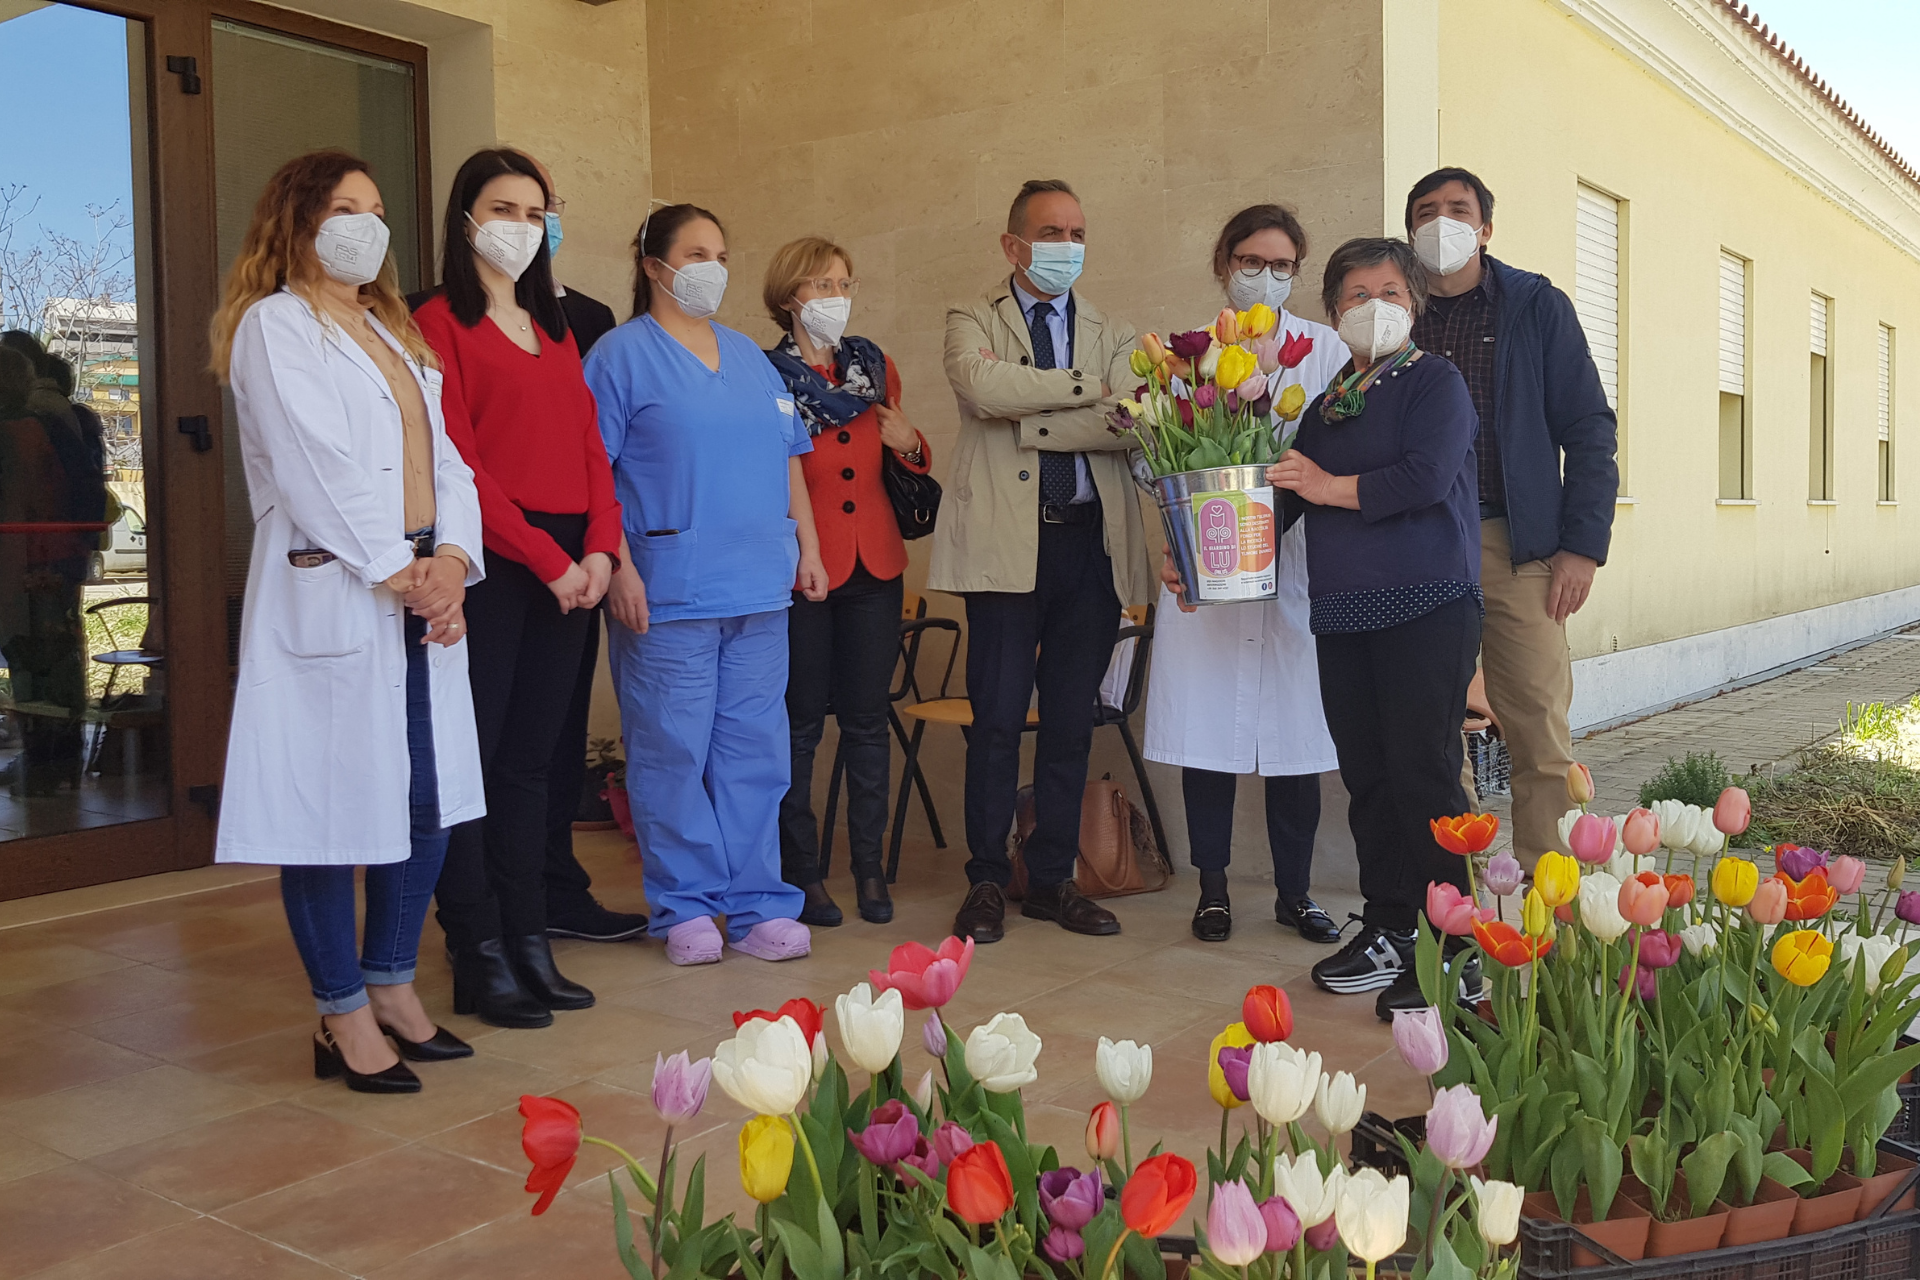 Tulipani in dono all’hospice dall’associazione “Il giardino di Lu”